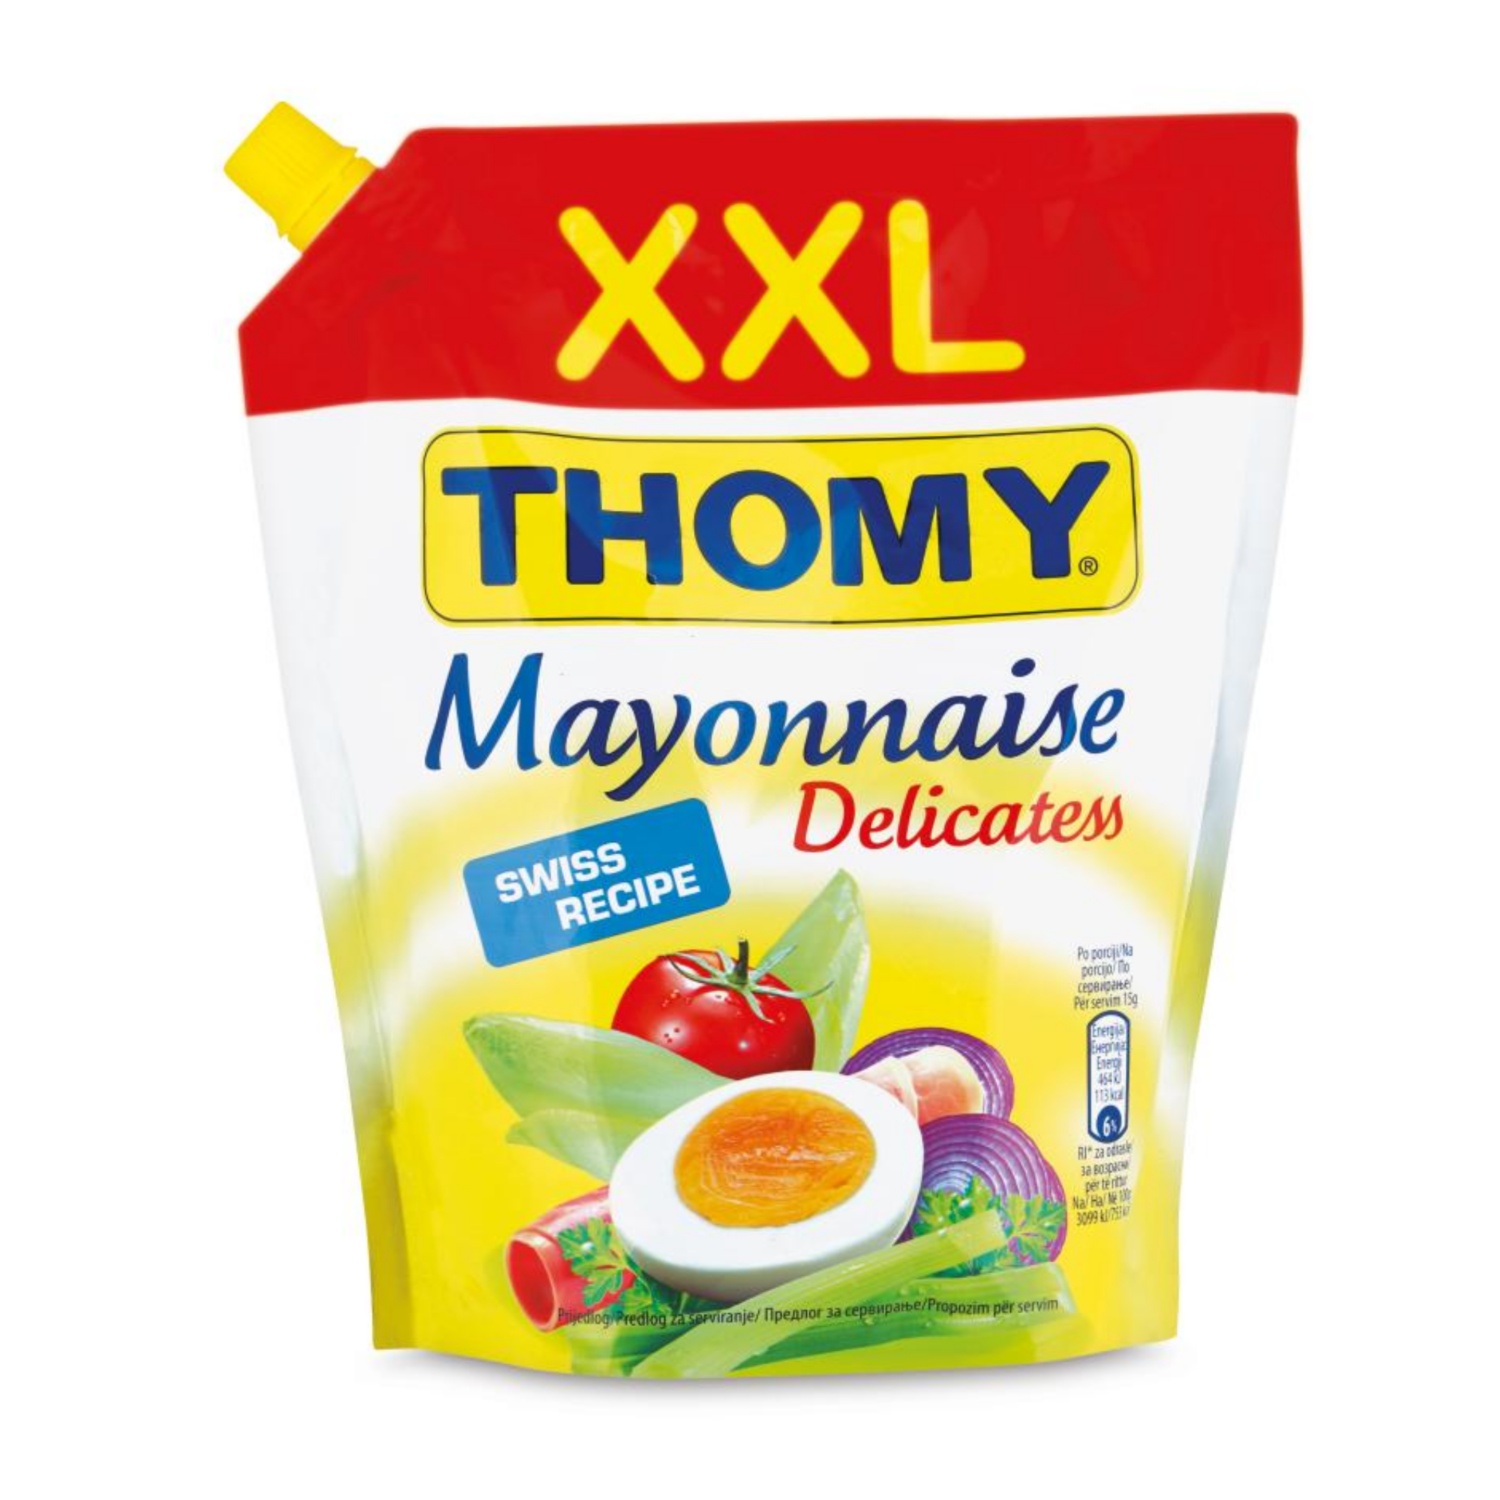 THOMY Majoneza XXL